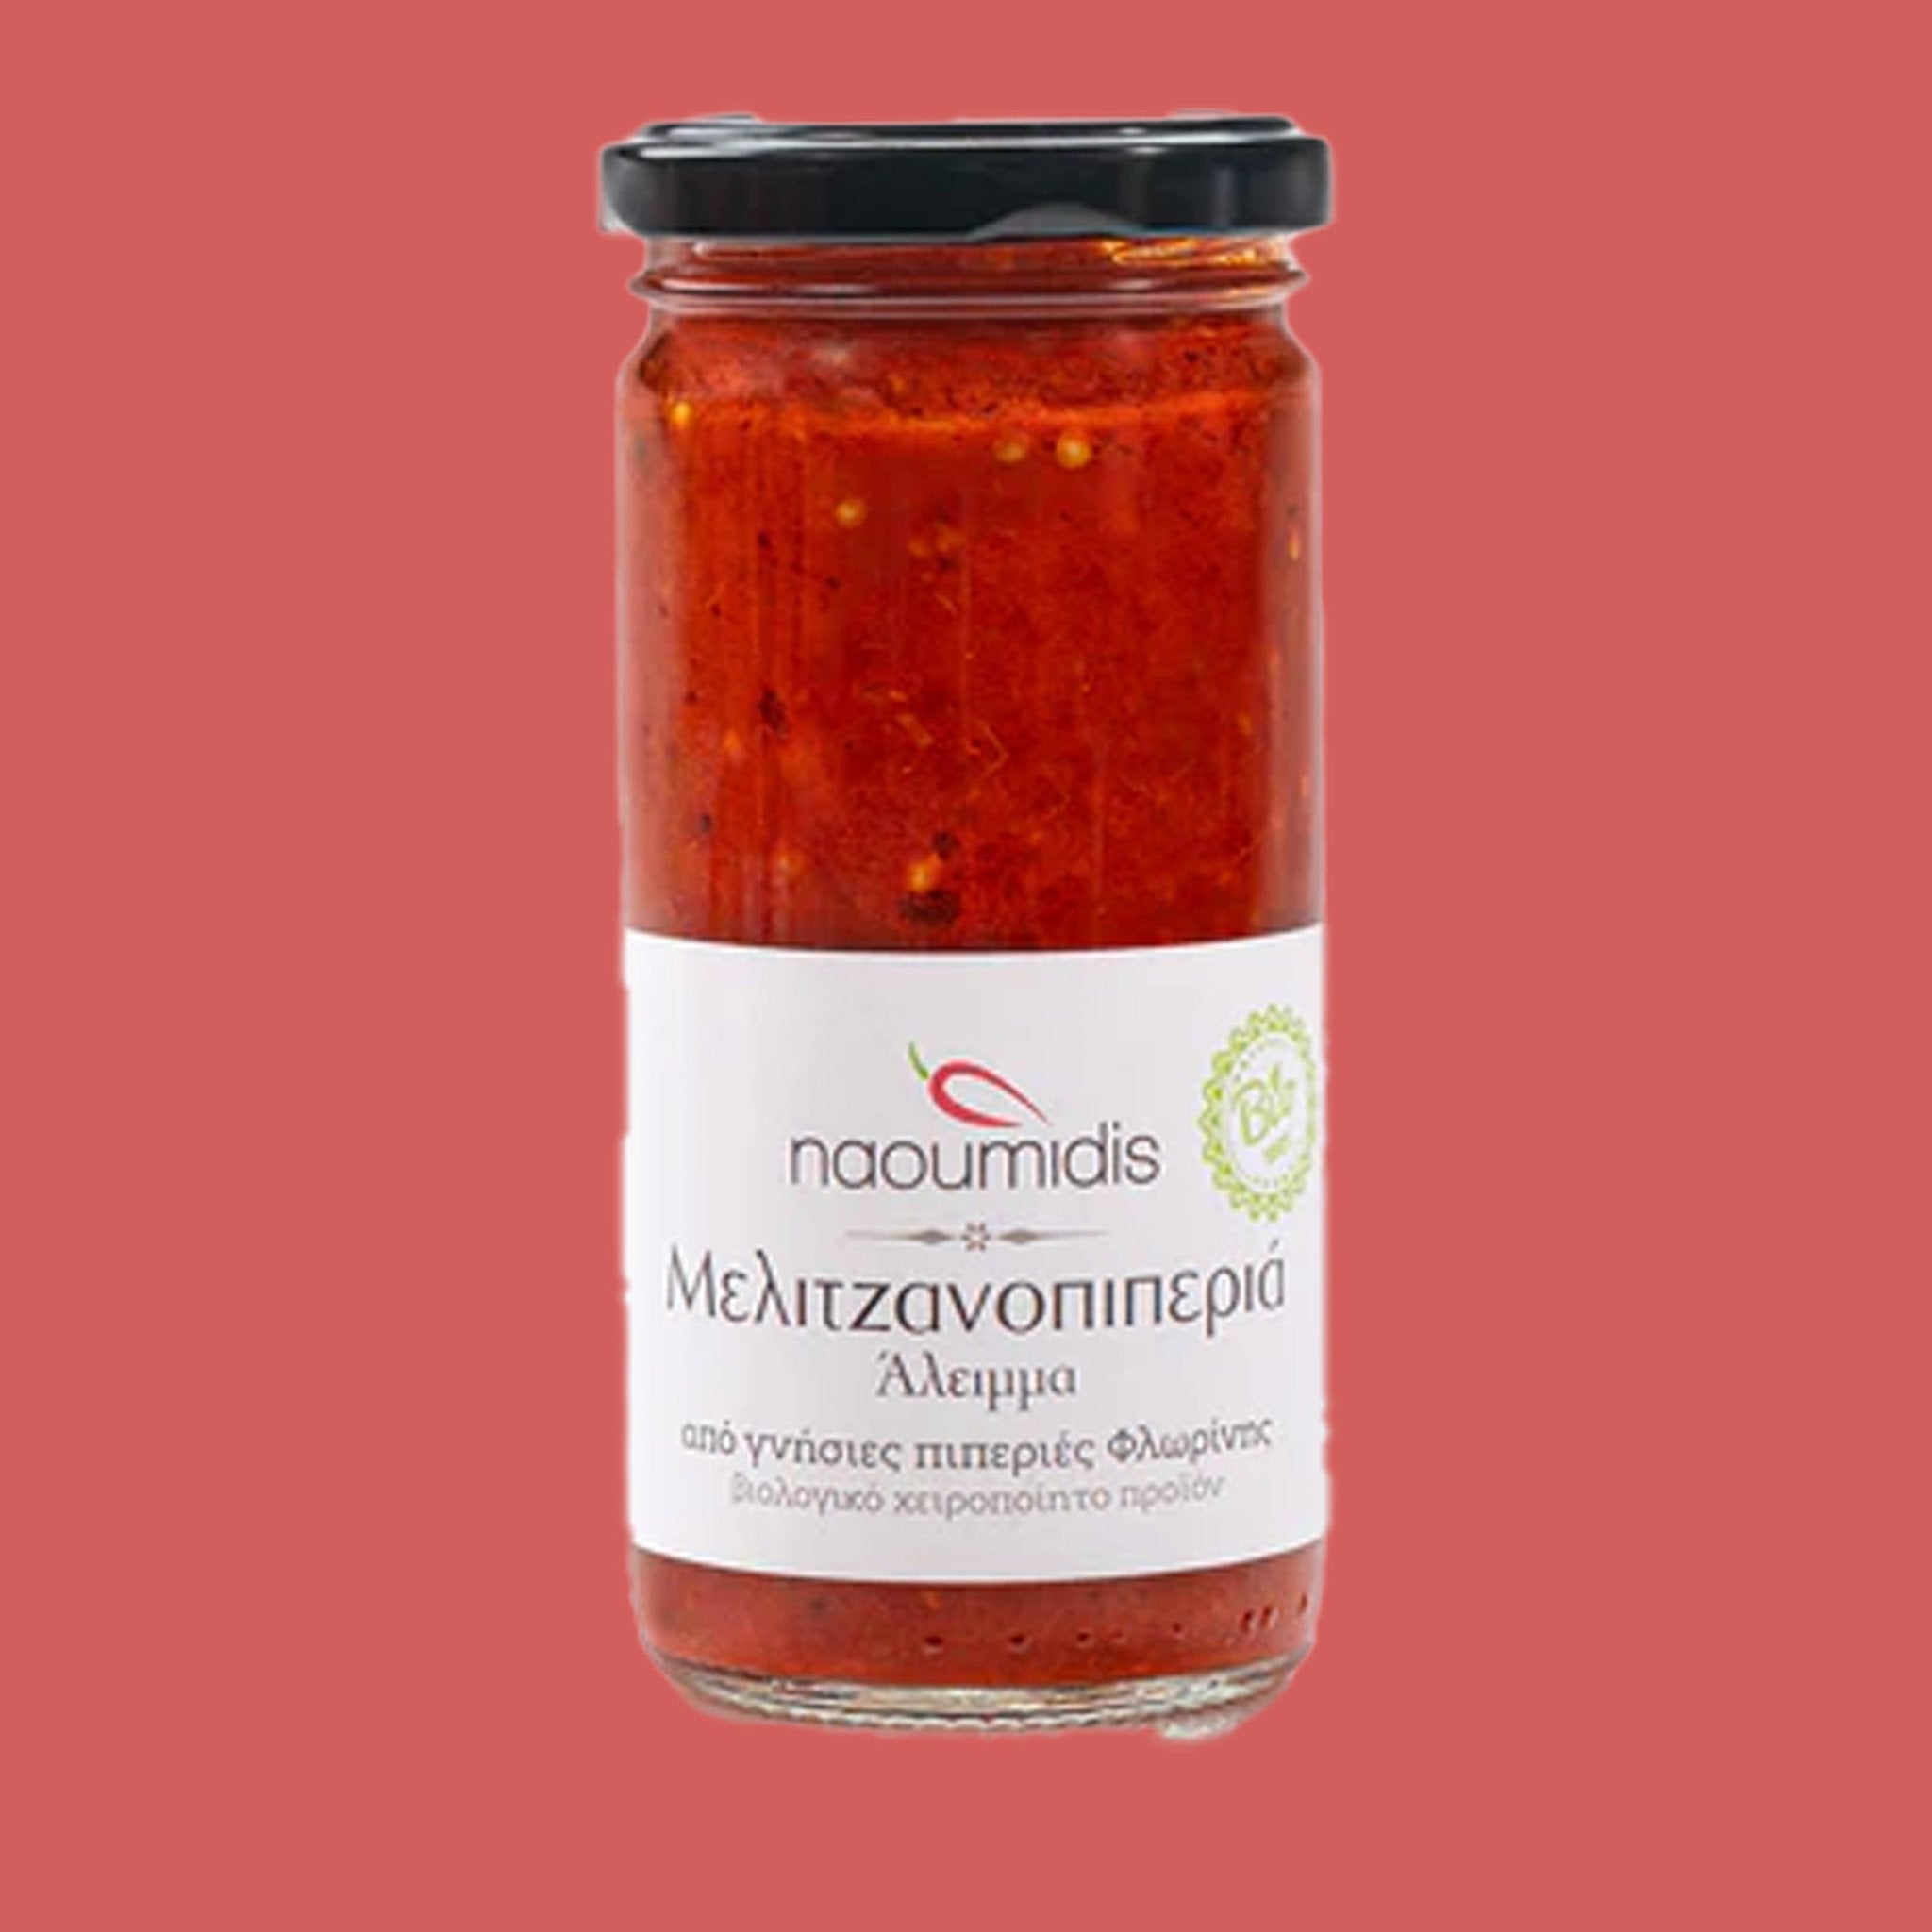 Bio Paprika-Aubergine-Paste (Melitzanopiperia) - OEL - Griechische Produkte und Olivenöl - Bestandsartikel red. MWST (7%) - Naoumidis Paprikaprodukte